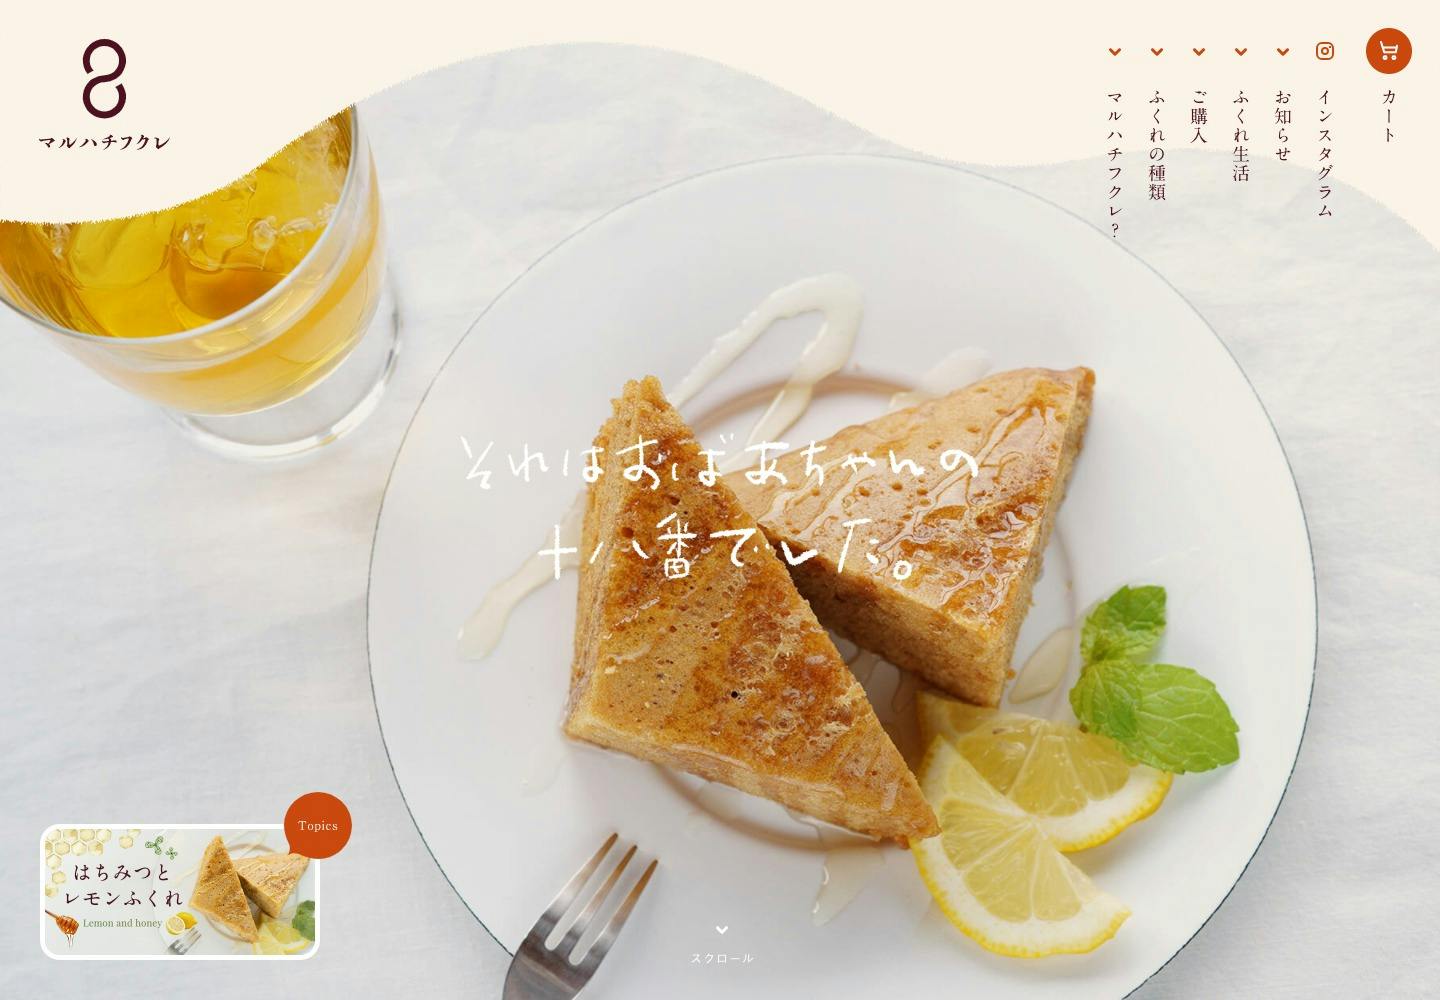 Cover Image for マルハチフクレ | 宮崎県都城のまるはちふくれ菓子店公式オンラインストア